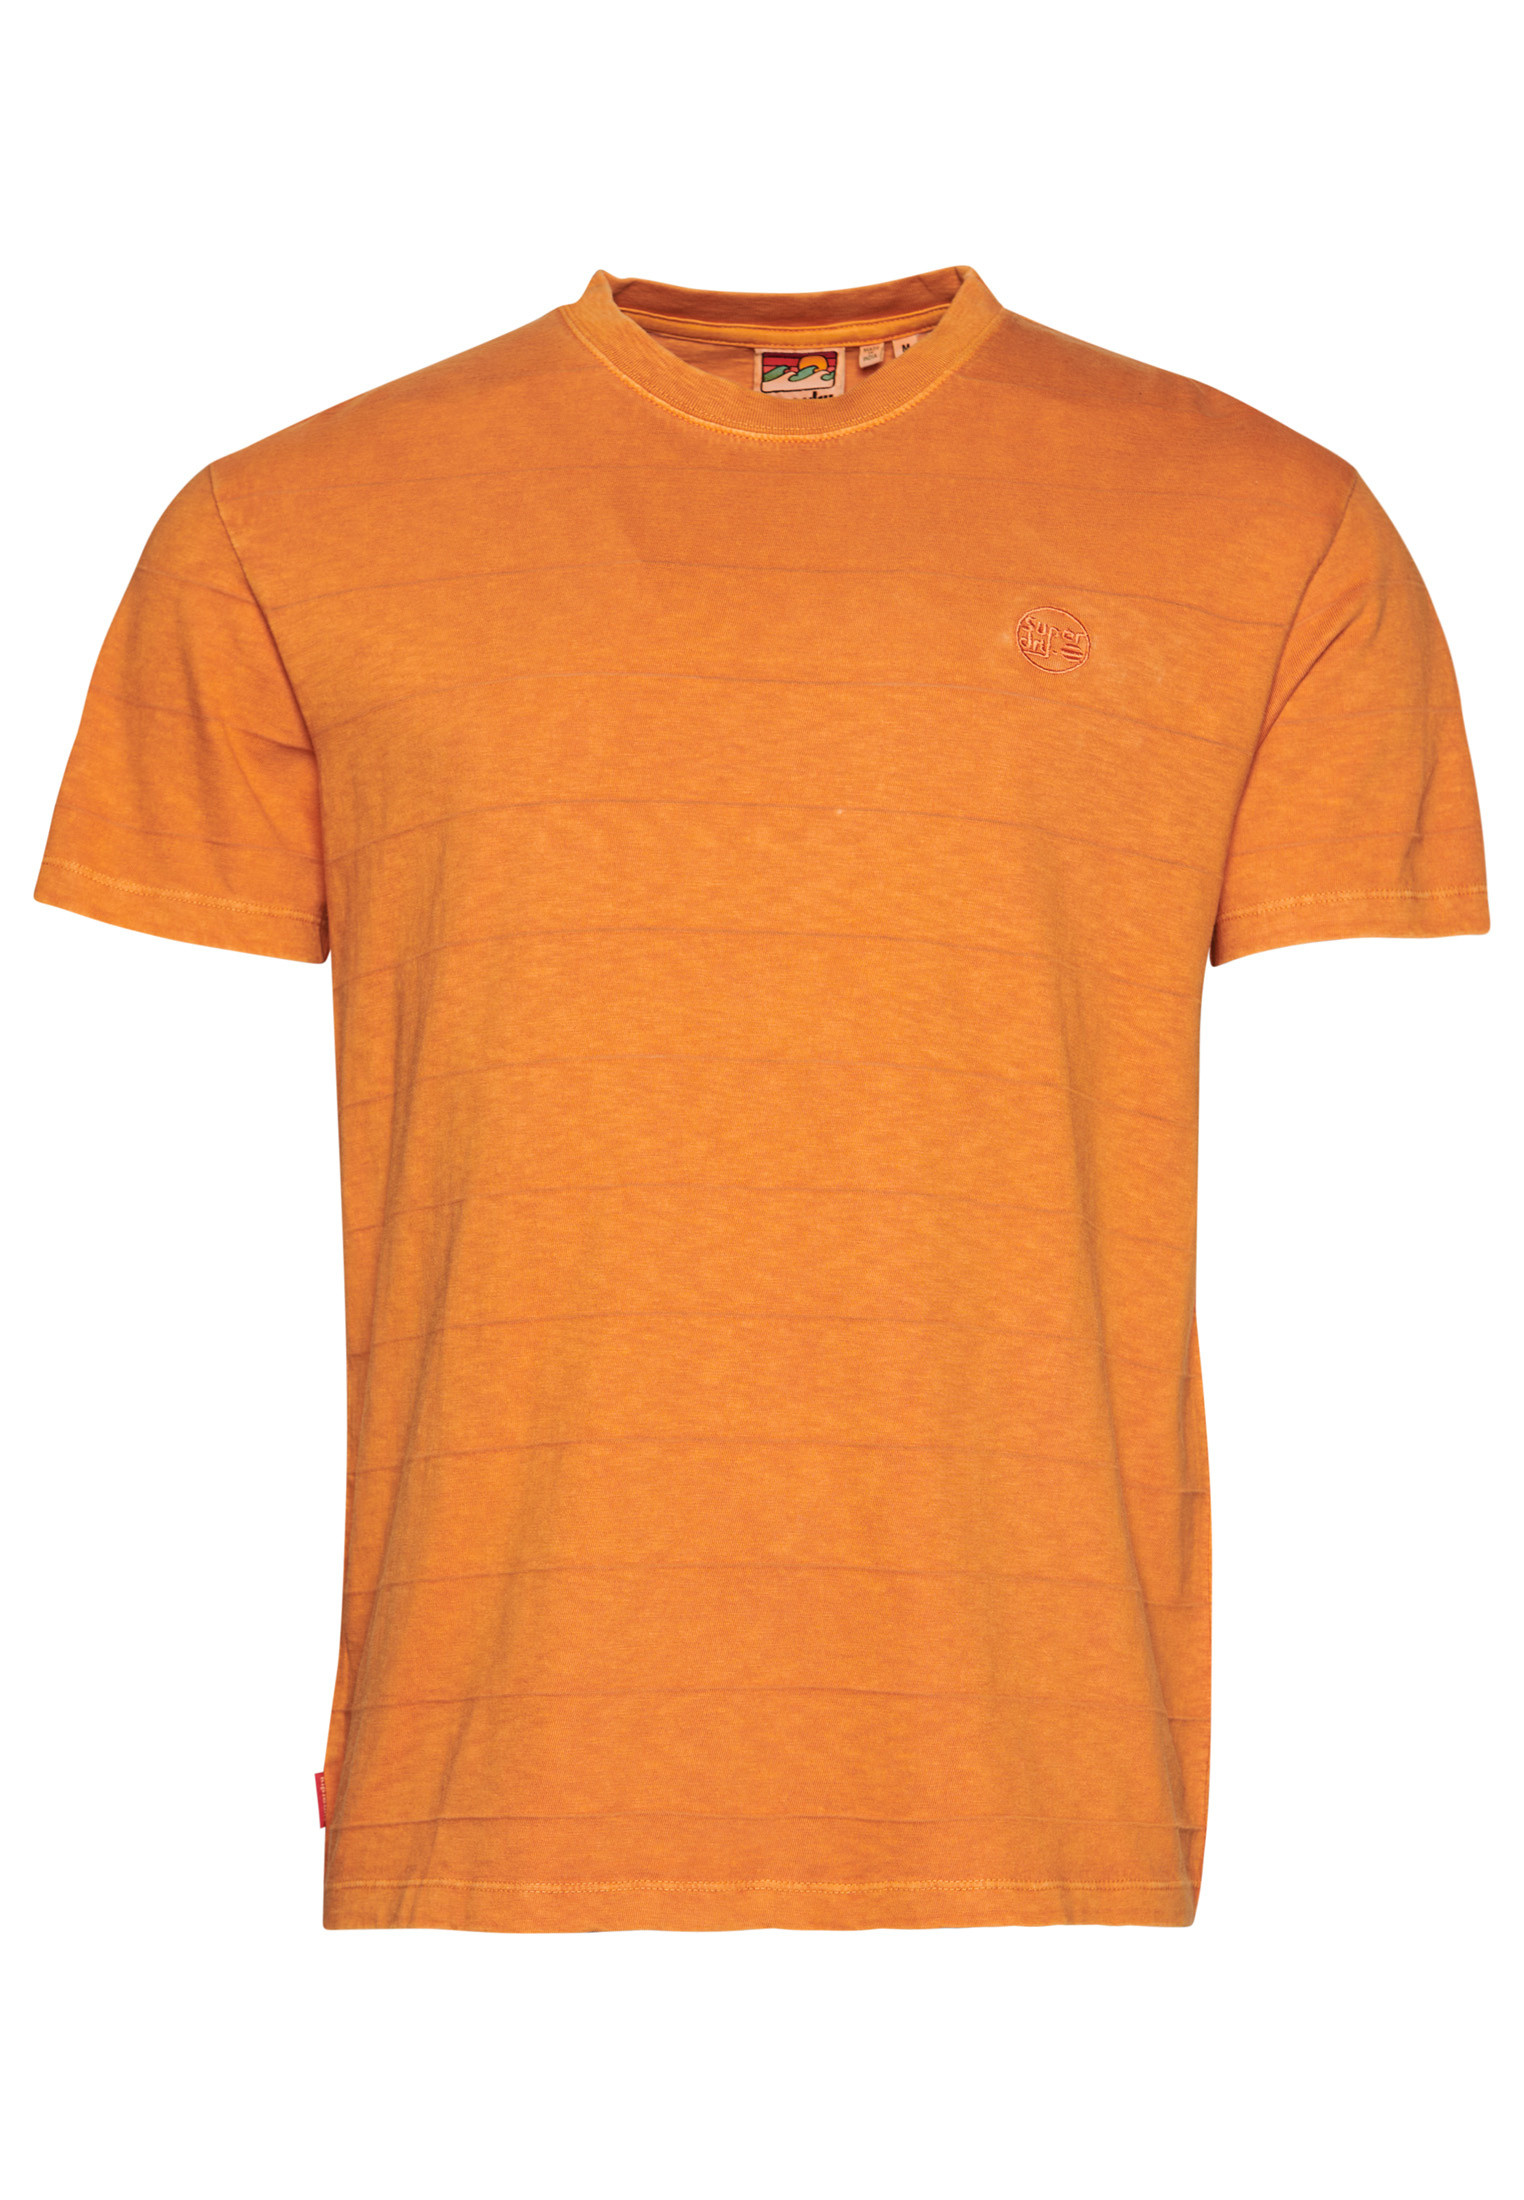 Superdry vintage effect striped t-shirt, Orange, large image number 0